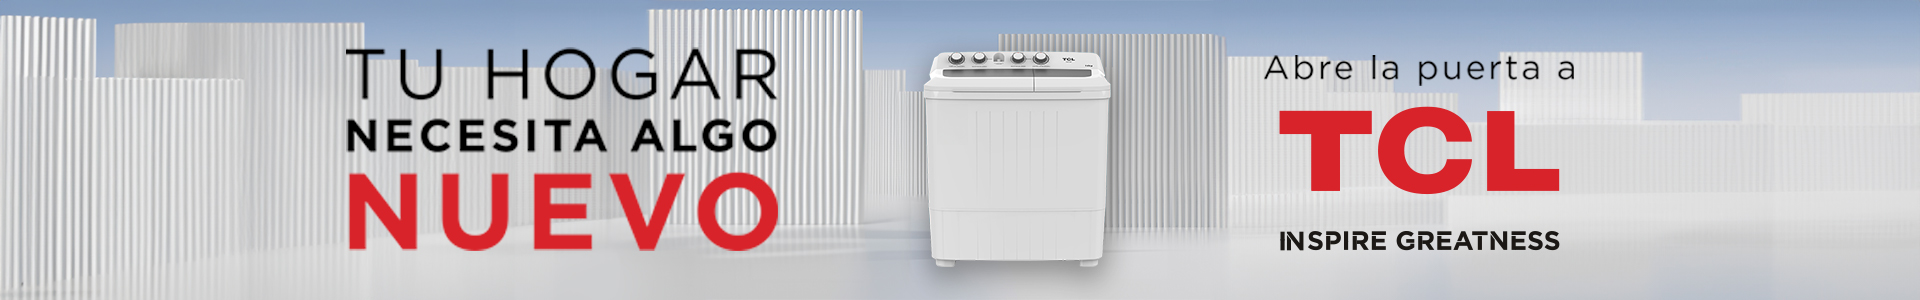 南宫ng·28 - Washing Machines